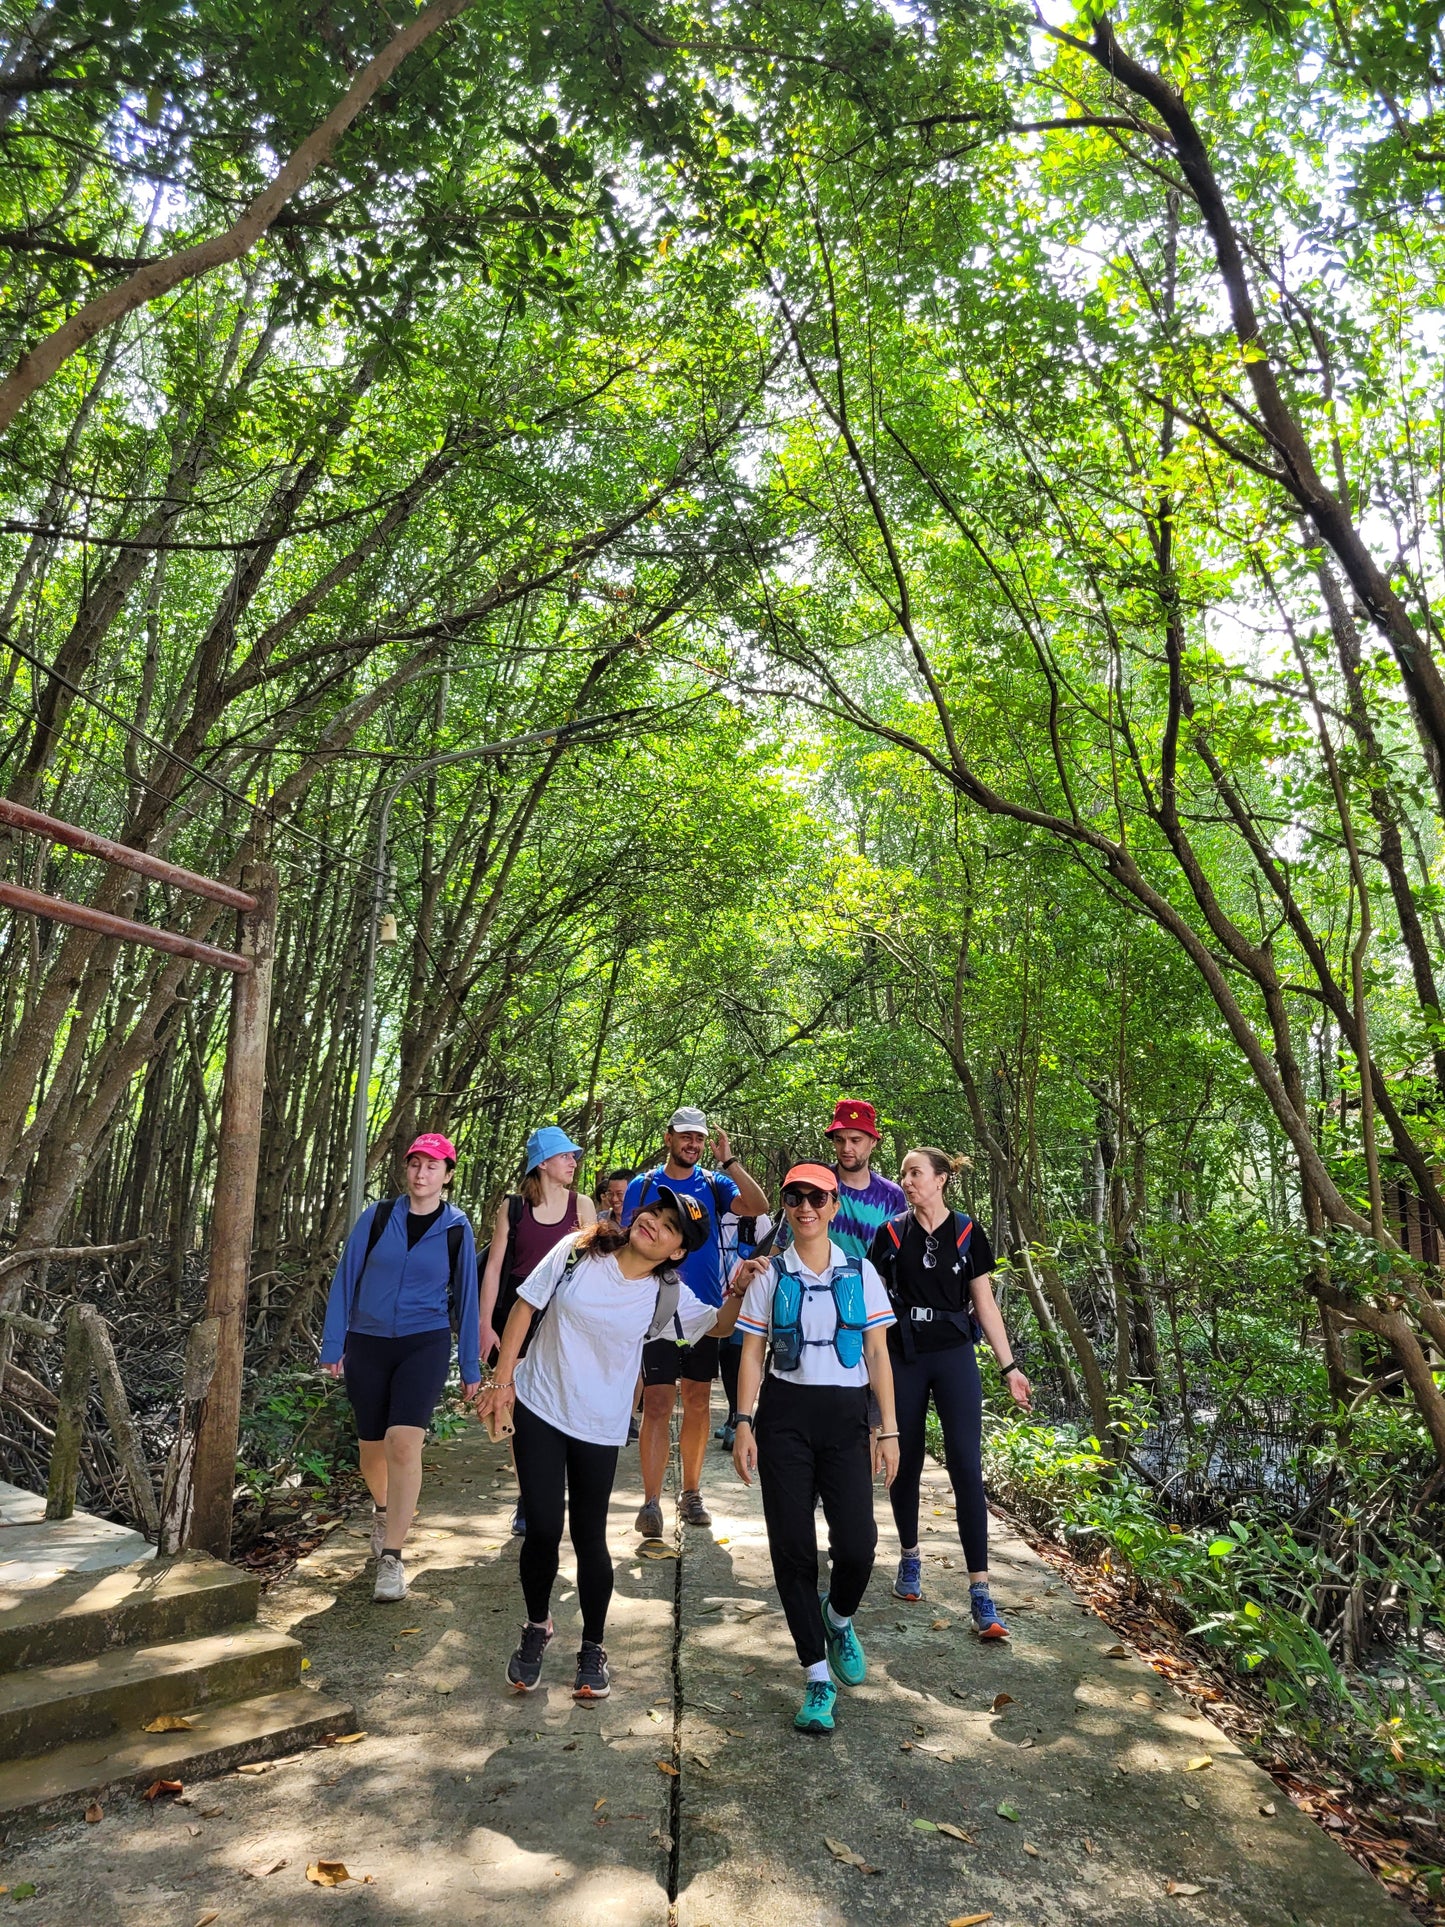 2A : Randonnée dans la forêt de mangroves de Can Gio ! (Réserve naturelle UNESCO)